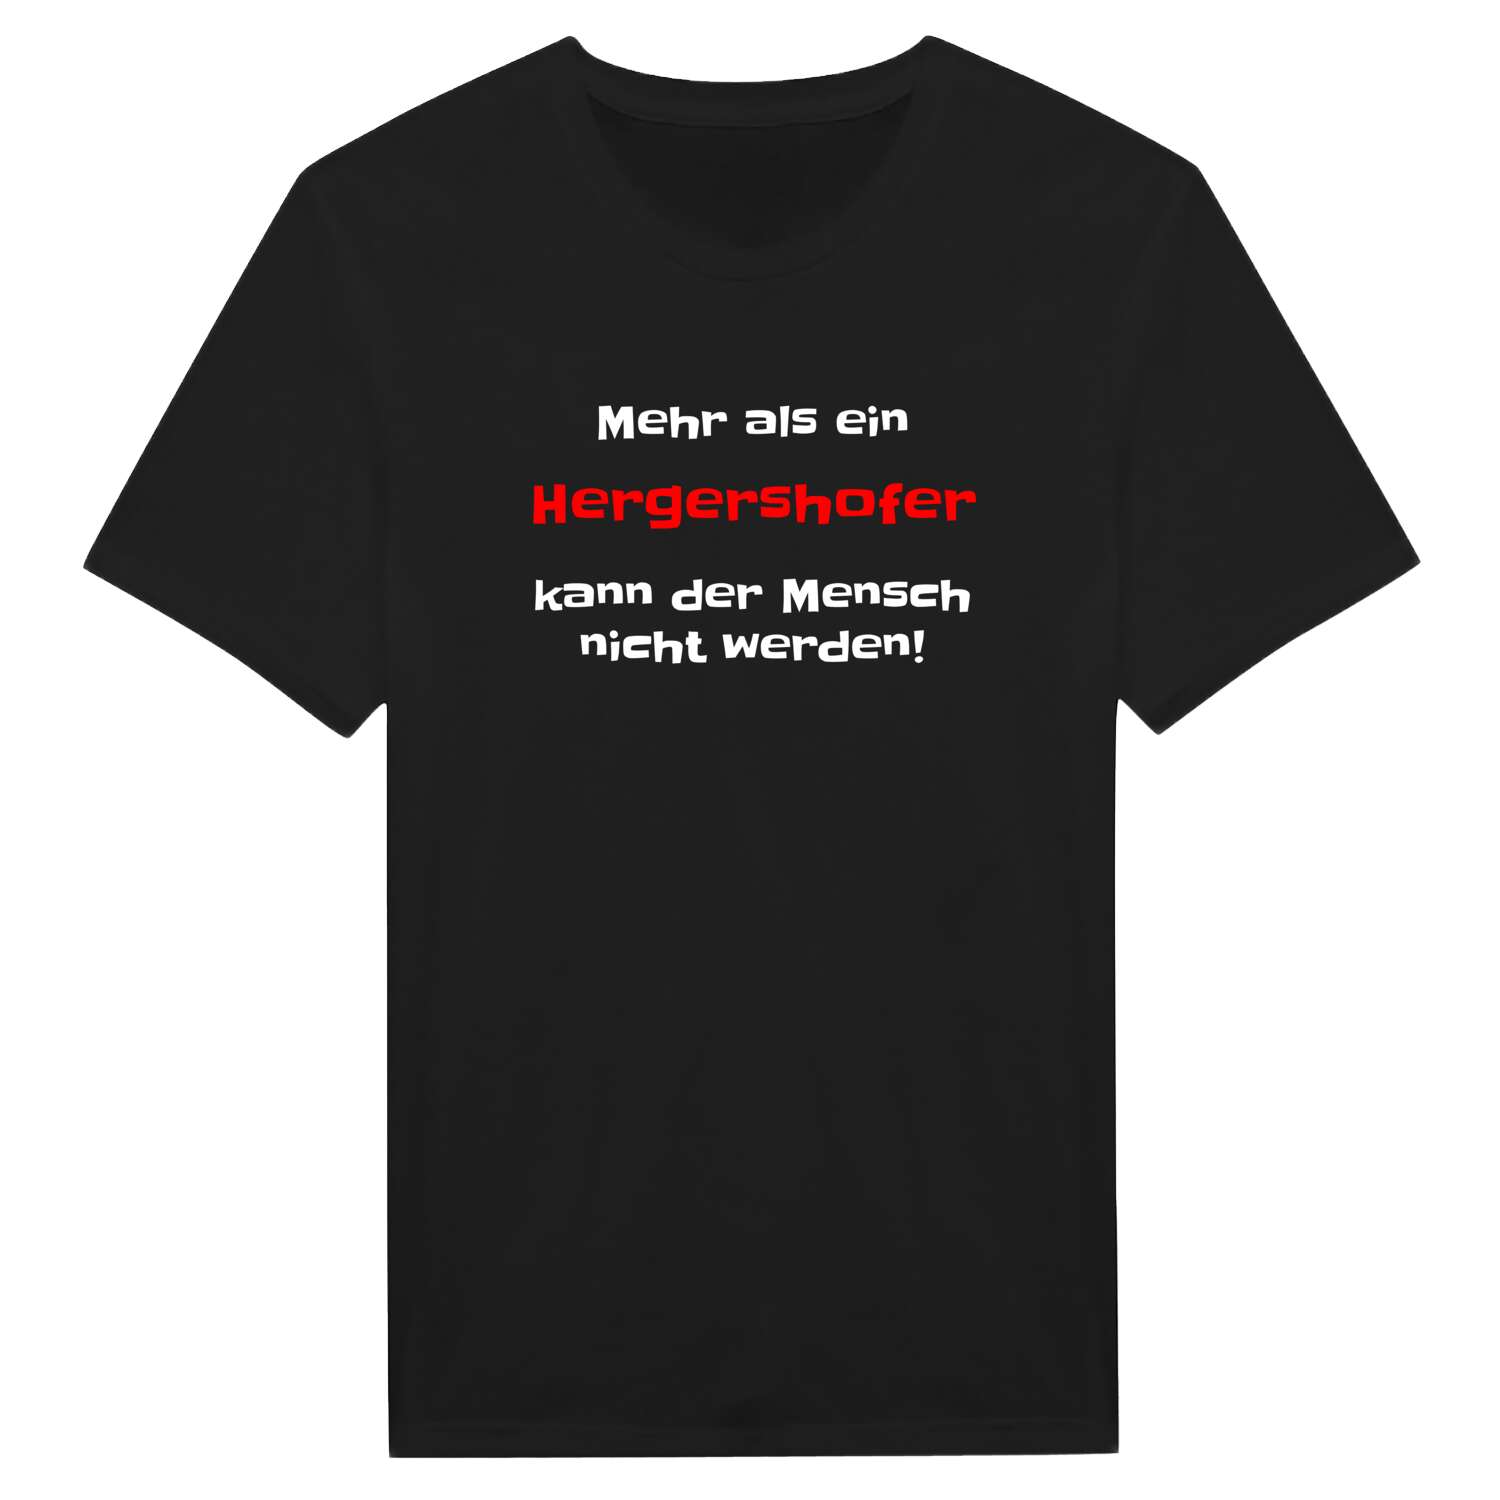 Hergershof T-Shirt »Mehr als ein«